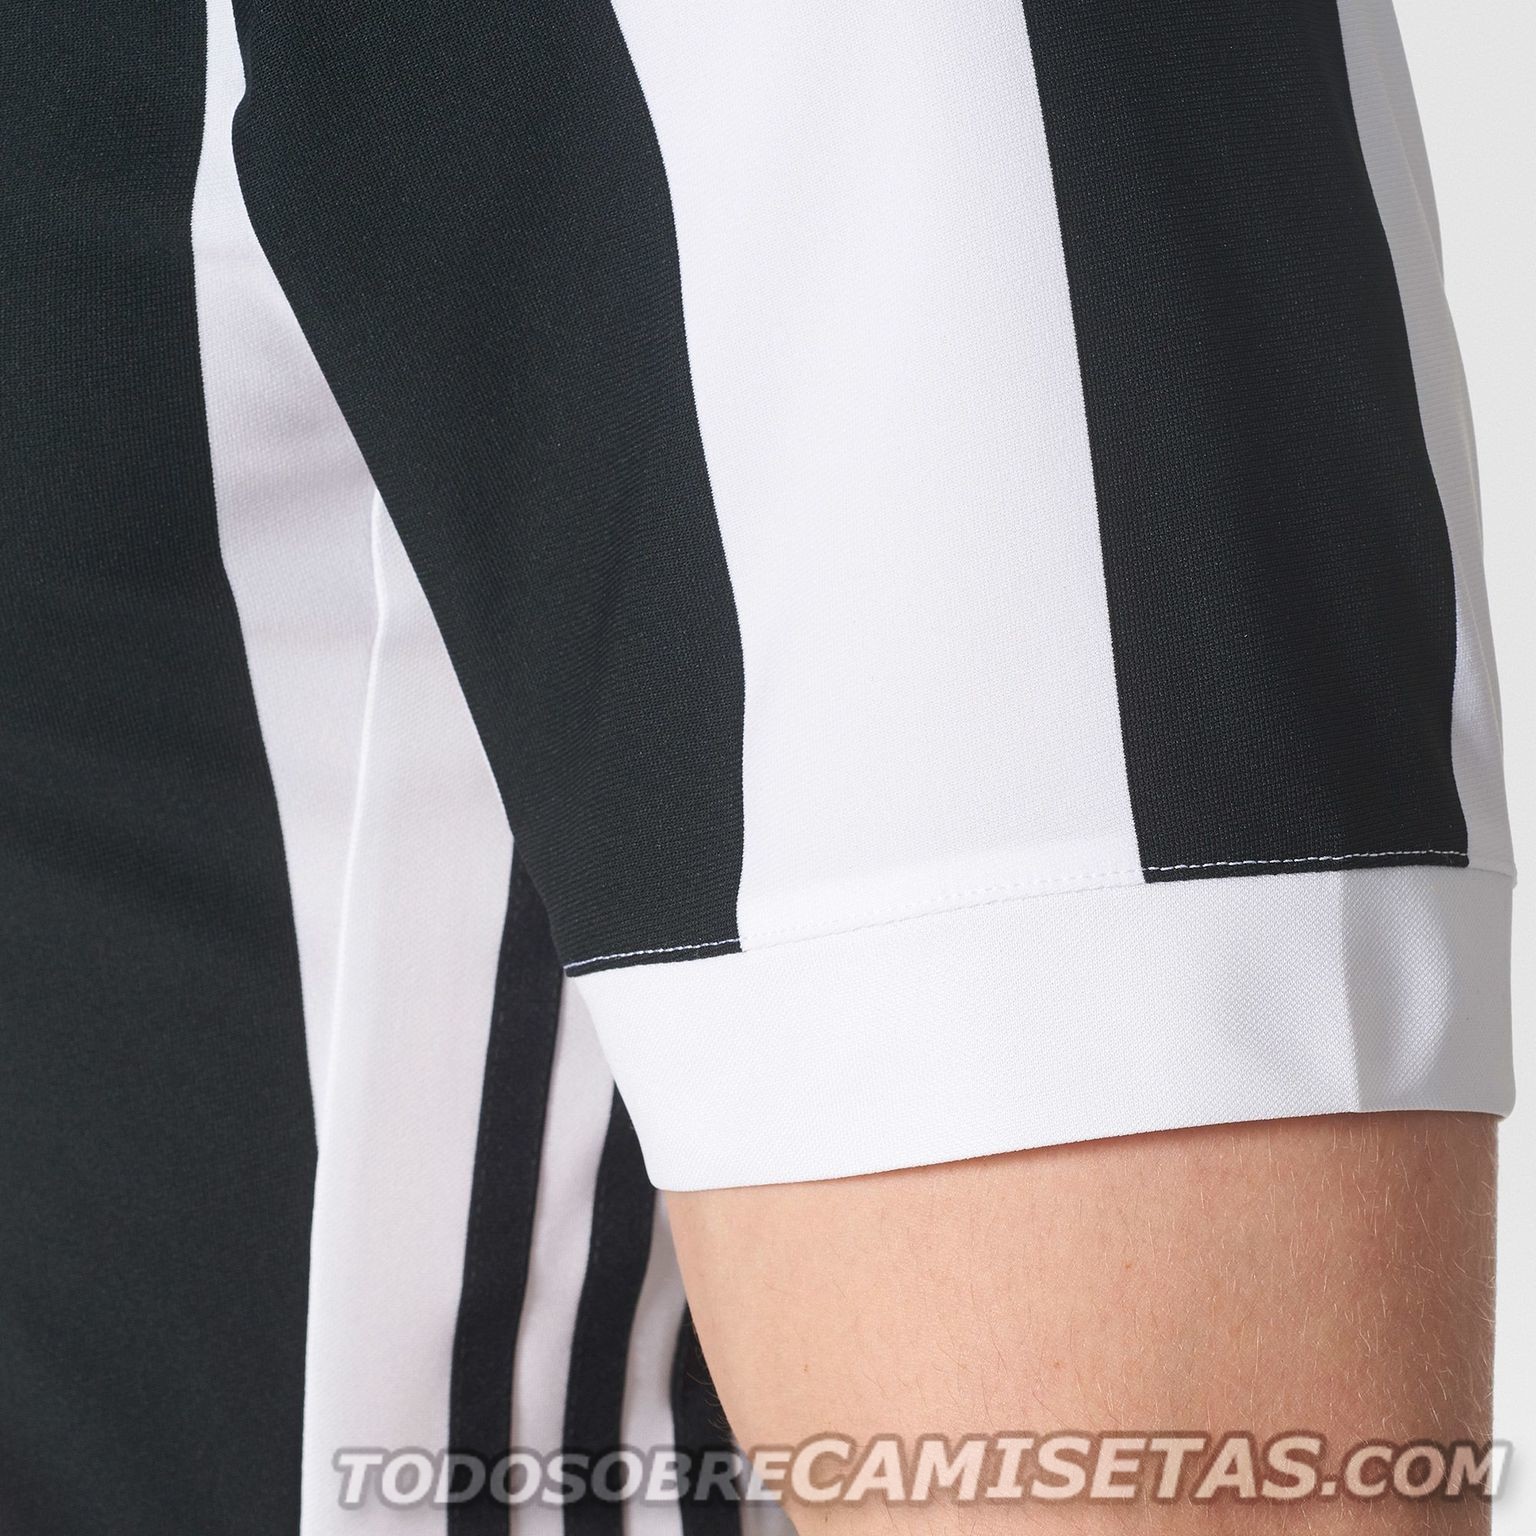 Juventus FC 2017-18 adidas home kit